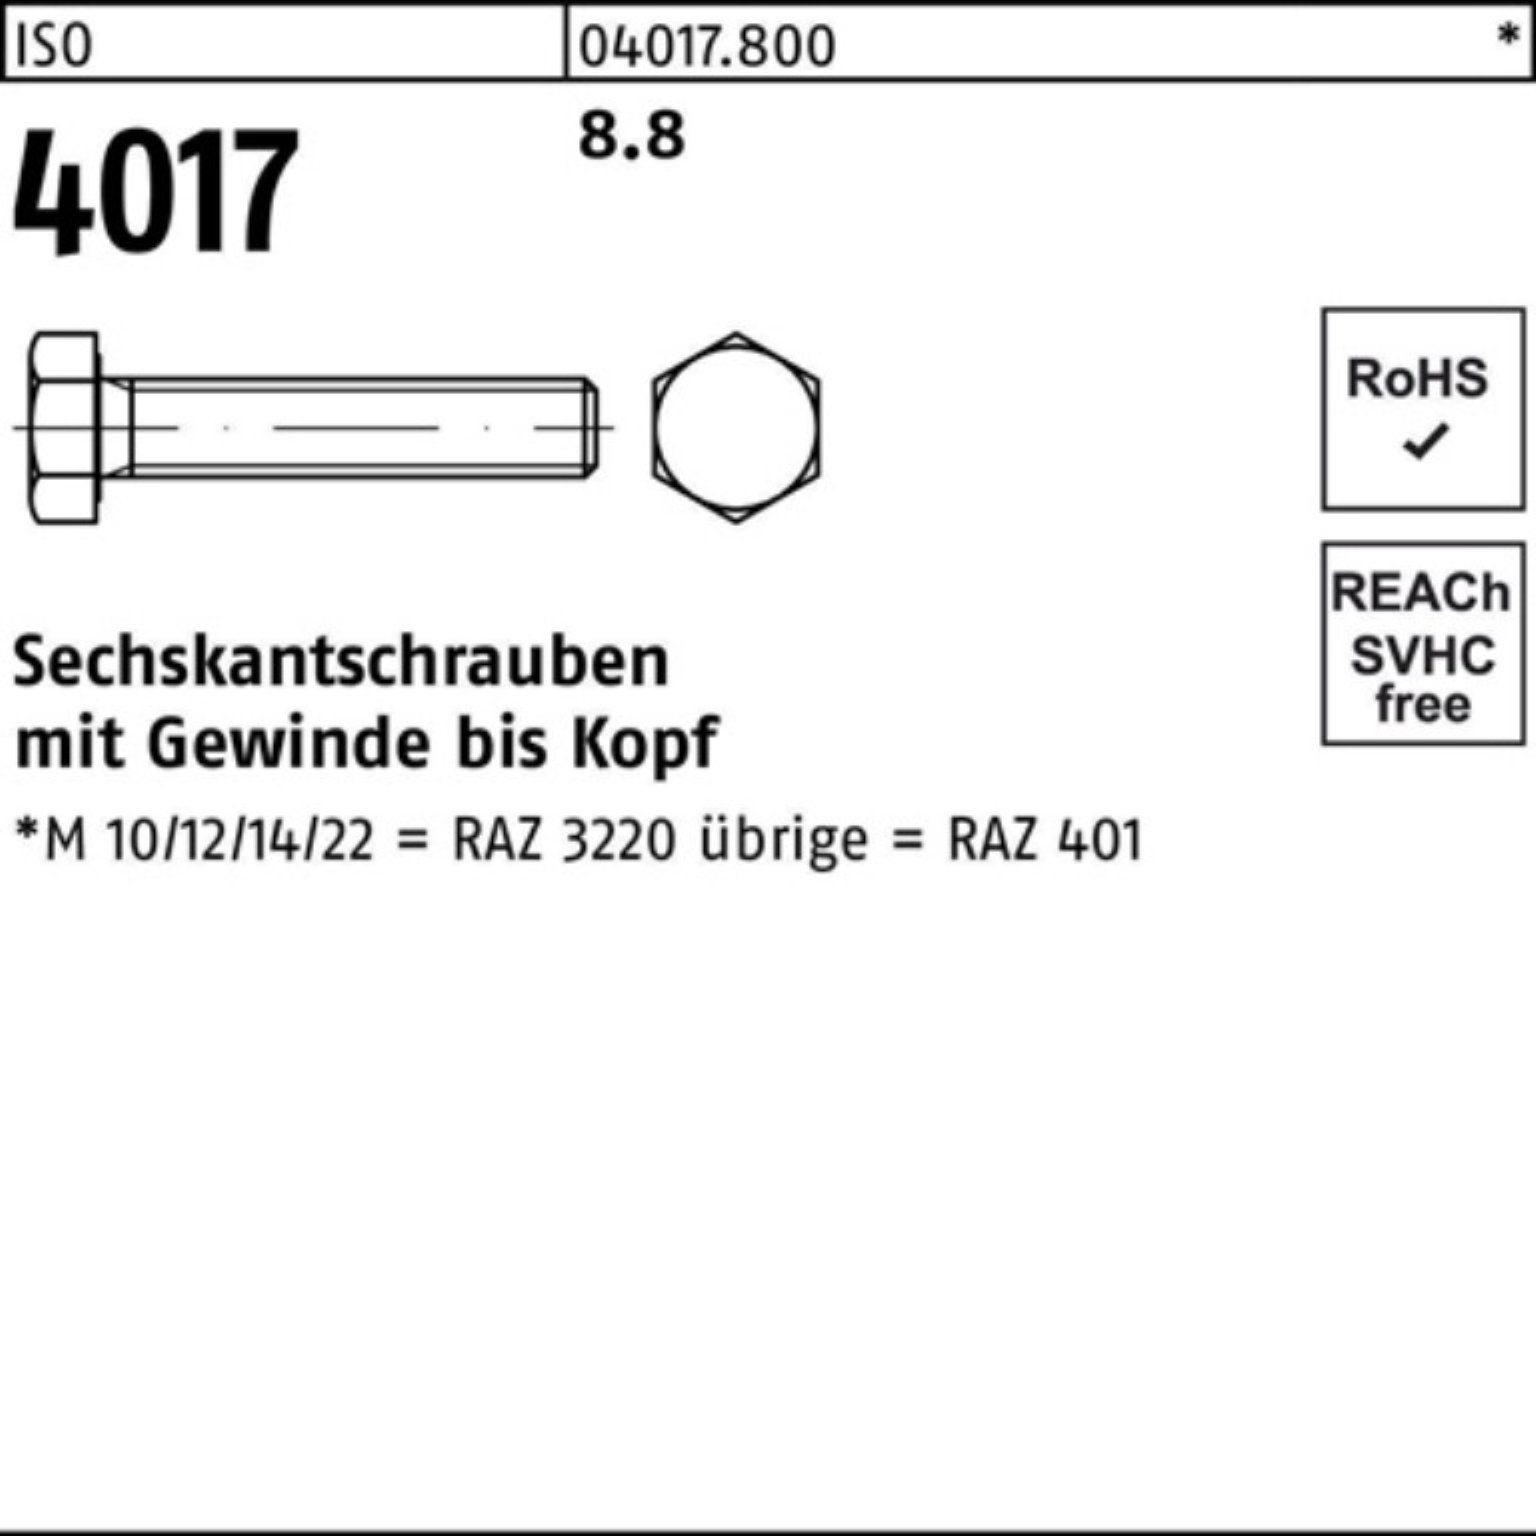 Bufab Sechskantschraube 100er Pack Sechskantschraube M42x 8.8 1 ISO Stück ISO 401 VG 4017 180